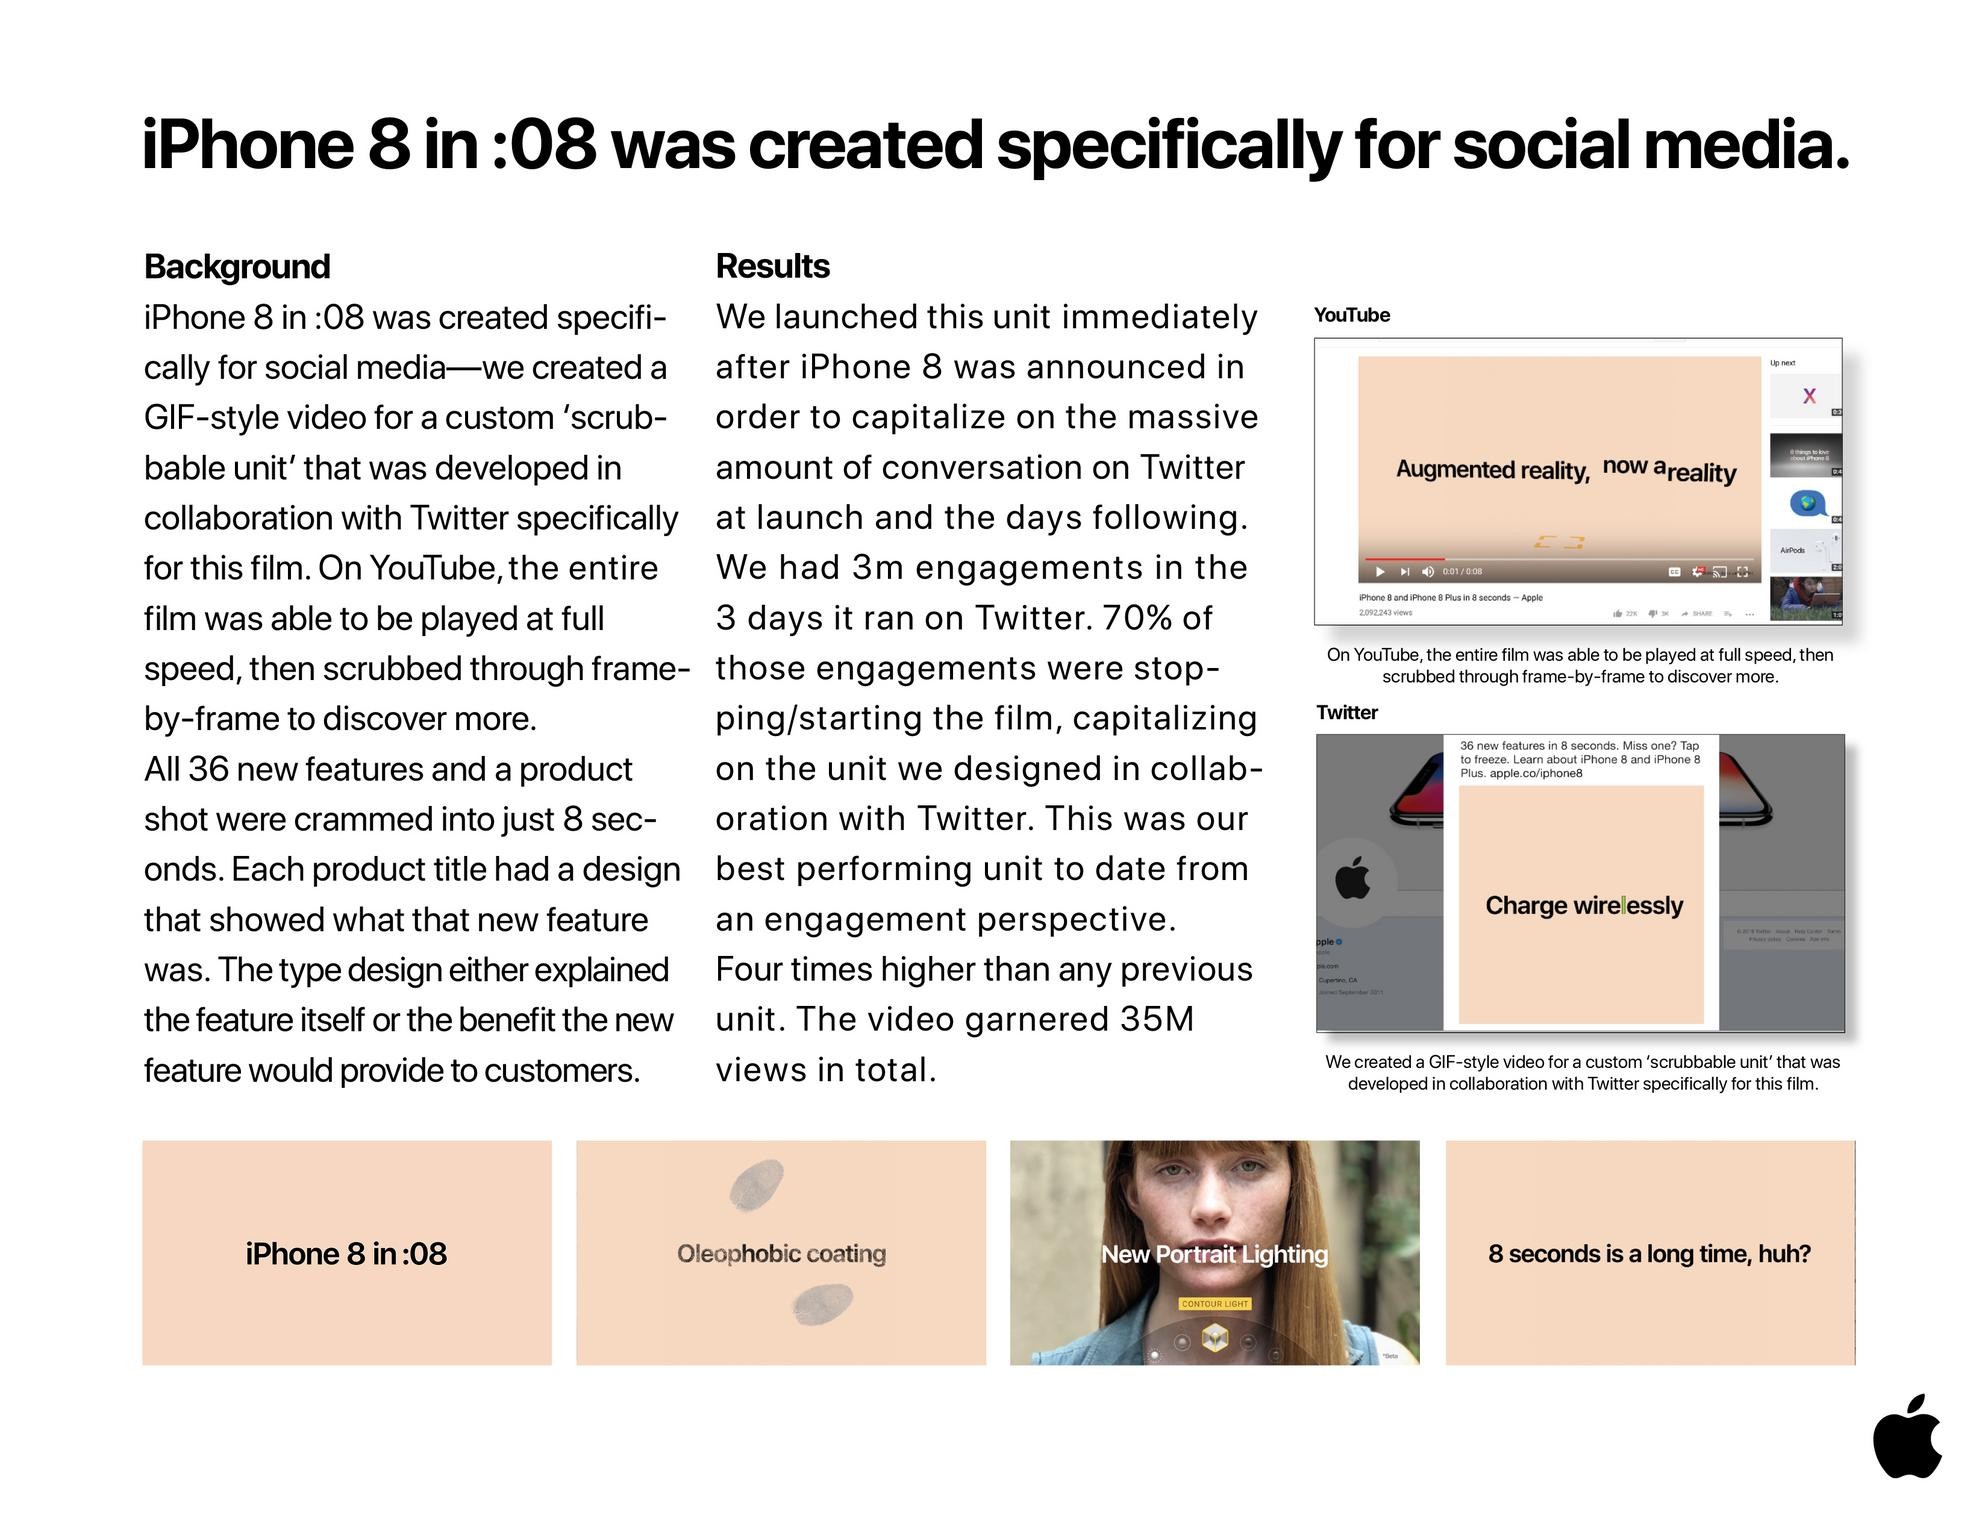 iPhone 8 in 08 Seconds: Mini-Case Study